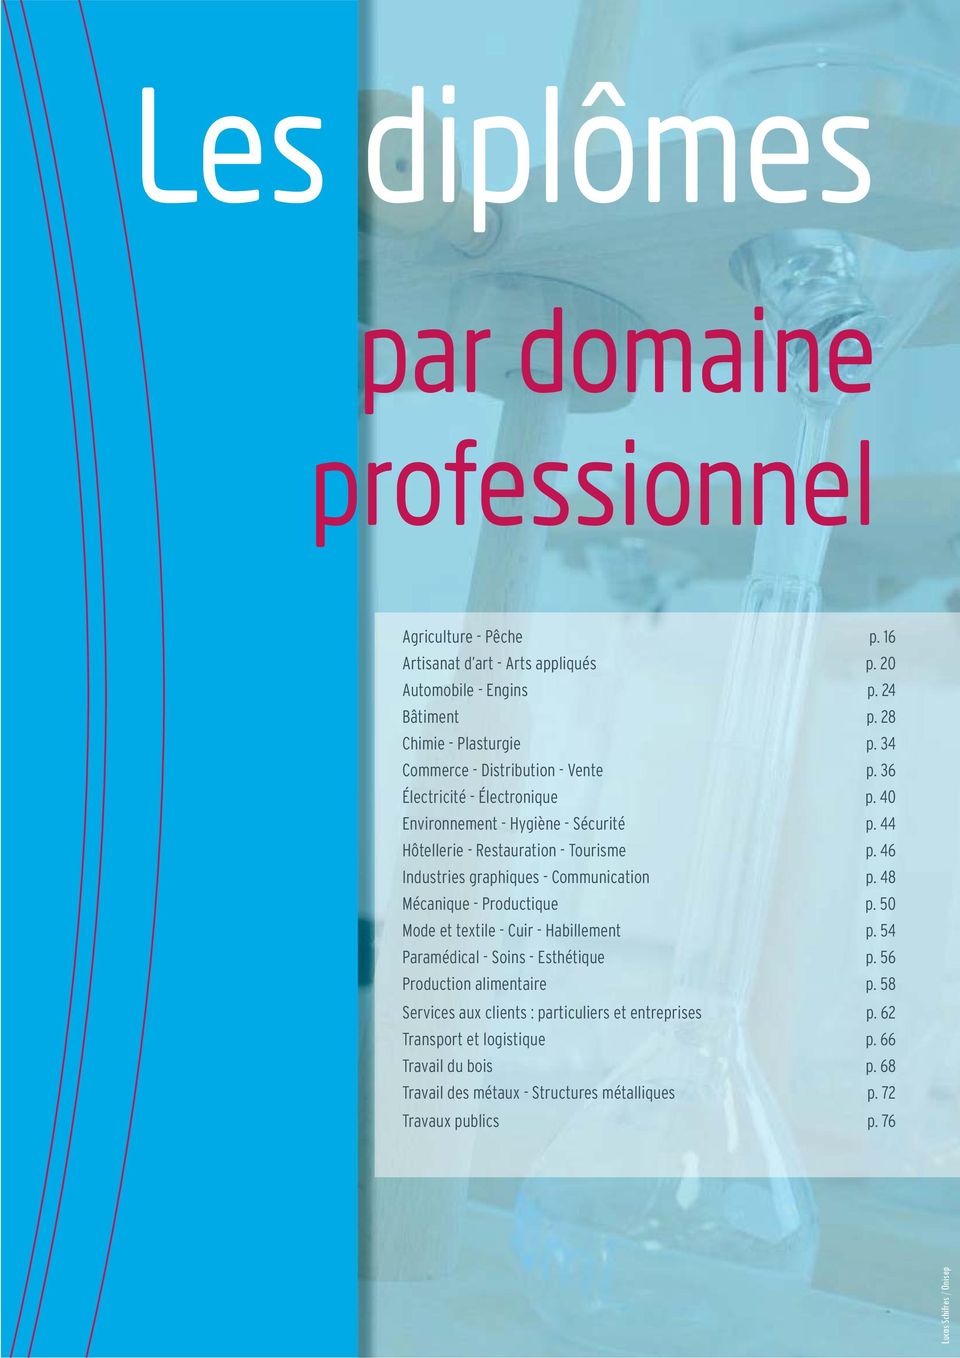 46 Industries graphiques - Communication p. 48 Mécanique - Productique p. 50 Mode et textile - Cuir - Habillement p. 54 Paramédical - Soins - Esthétique p.